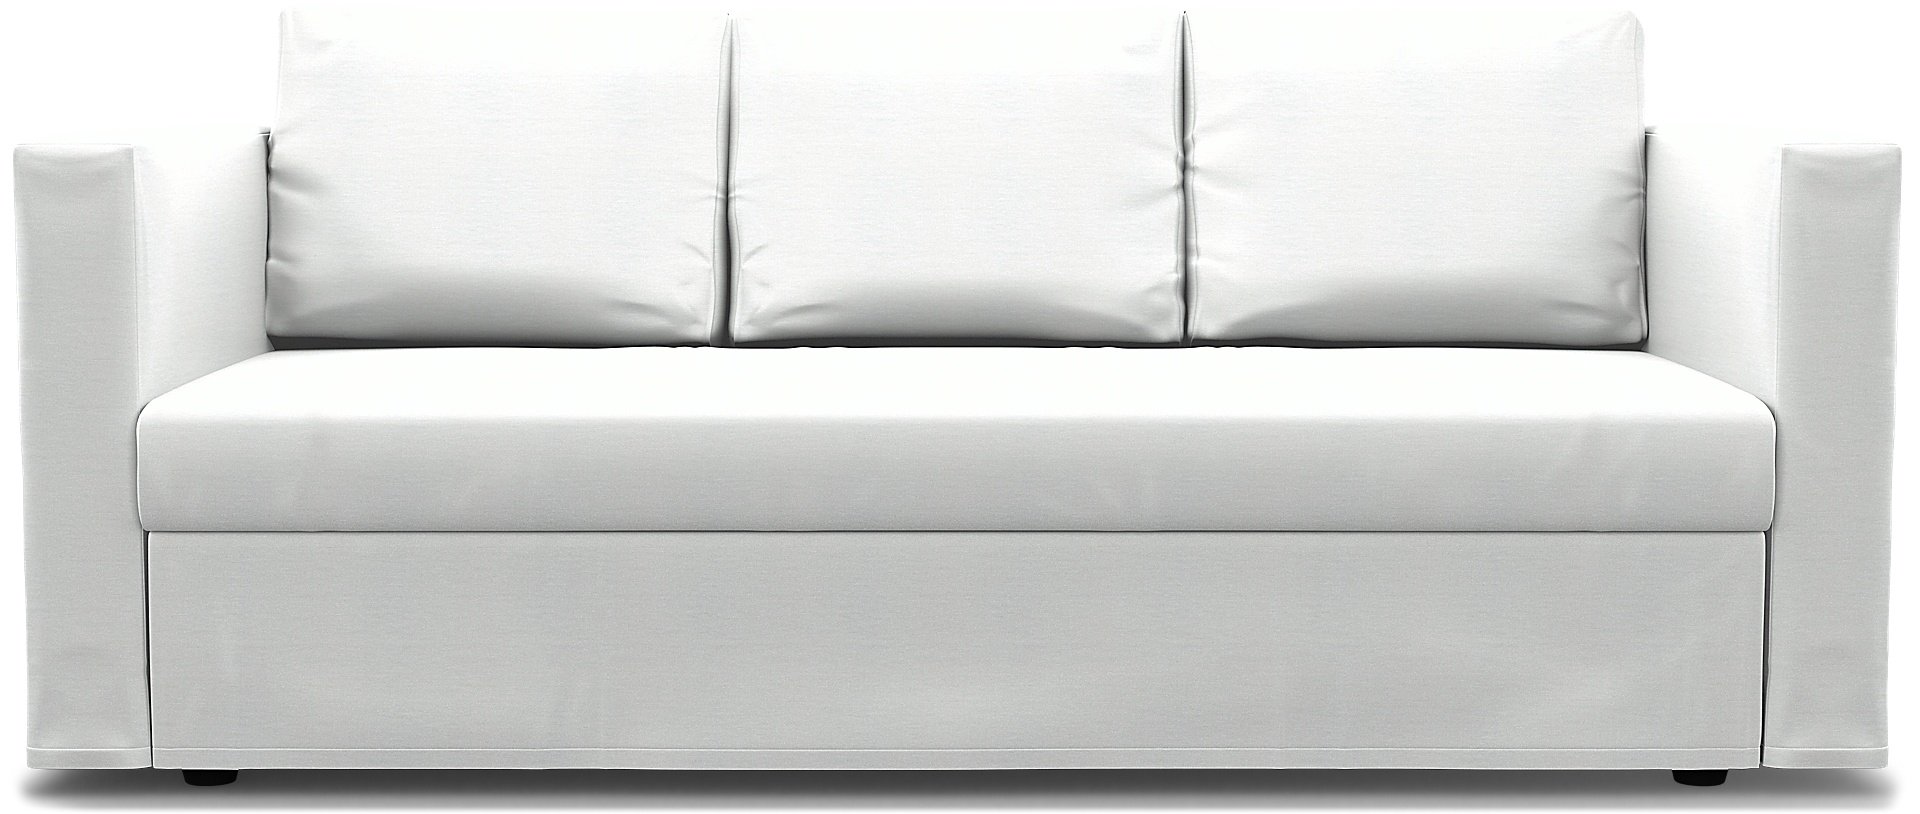 IKEA - Friheten 3 Seater Sofa Bed Cover, White, Linen - Bemz